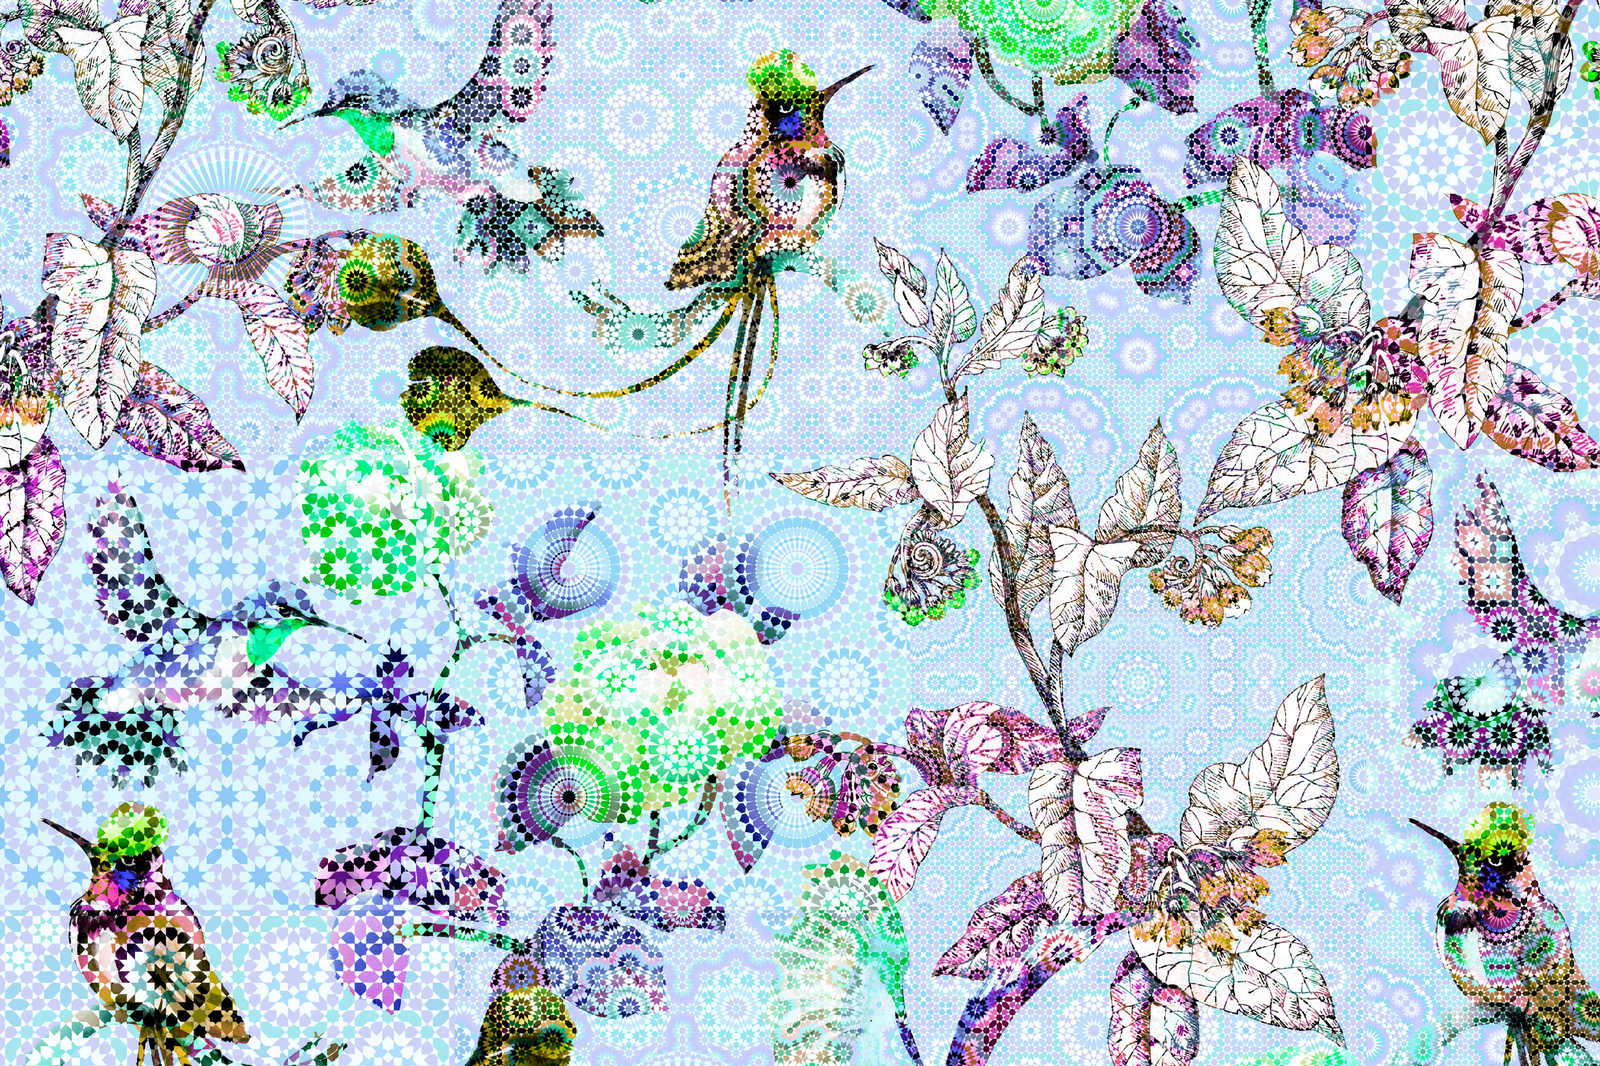             Cuadro Flores y Pájaros en Mosaico - 0,90 m x 0,60 m
        